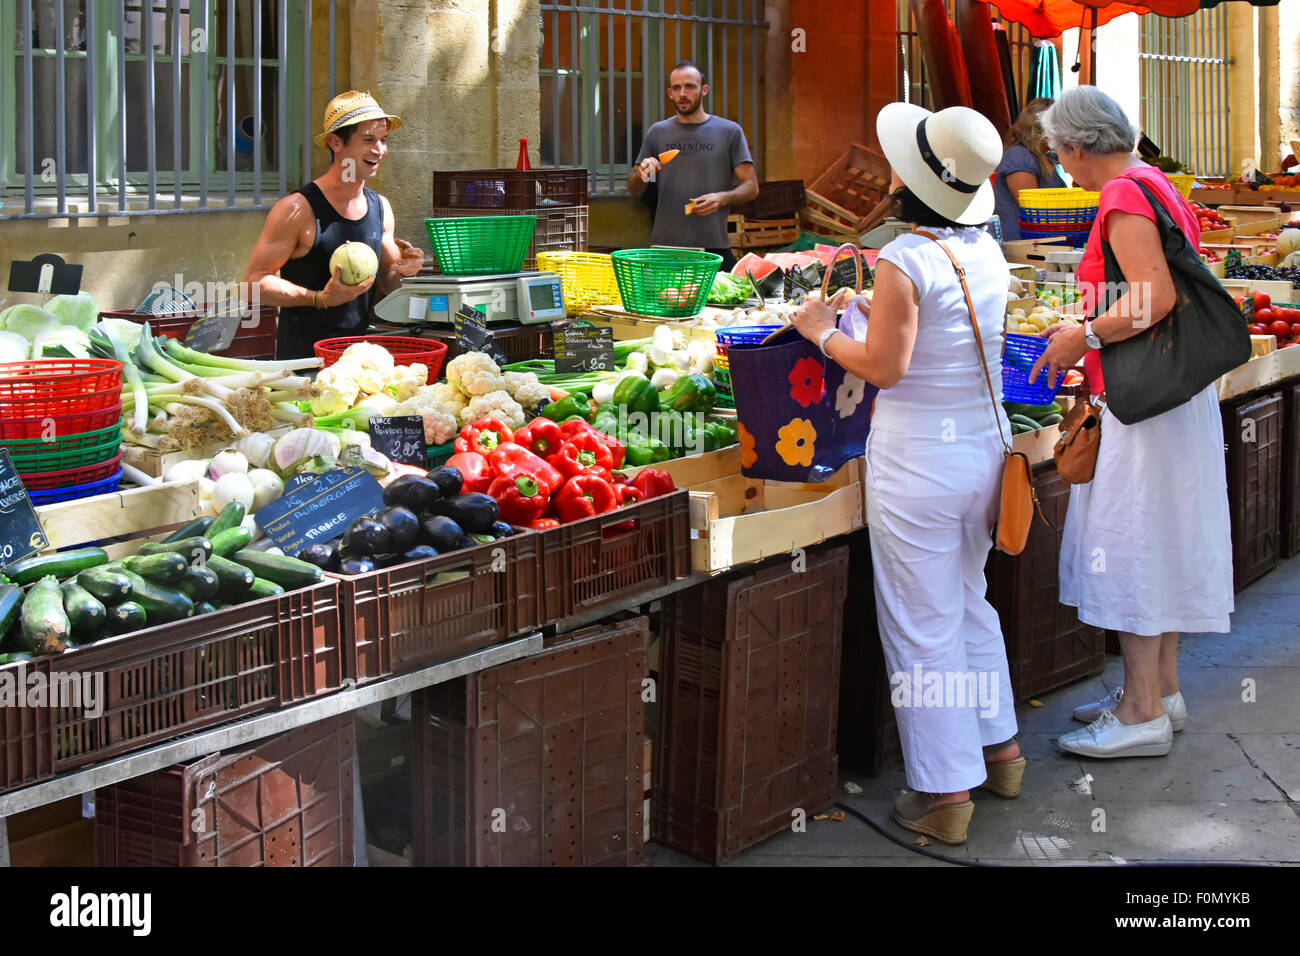 Les clients achètent des légumes sur les étals du marché du support de stalle dans le marché de rue de fruits et légumes à Aix en Provence en Provence Sud de la France Banque D'Images